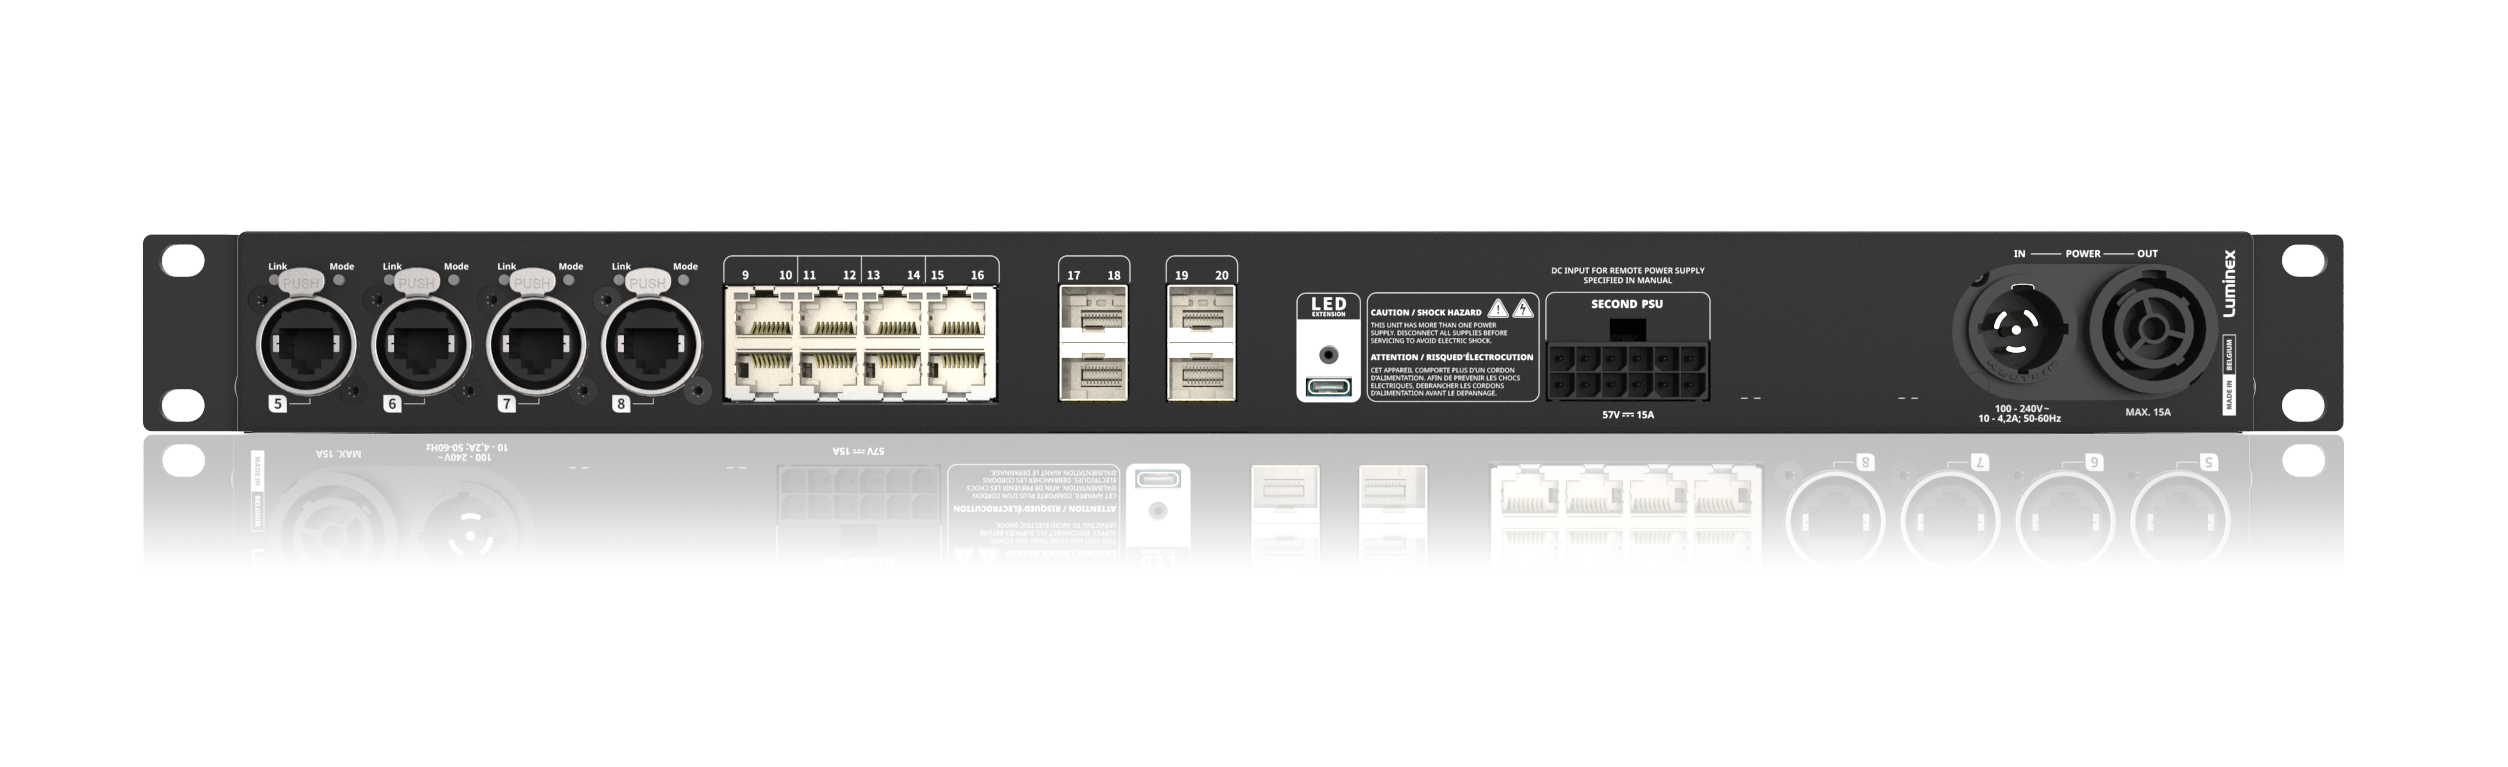 Luminex GigaCore 12 - Gigabit Ethernet Switch with 12 RJ45 Ports